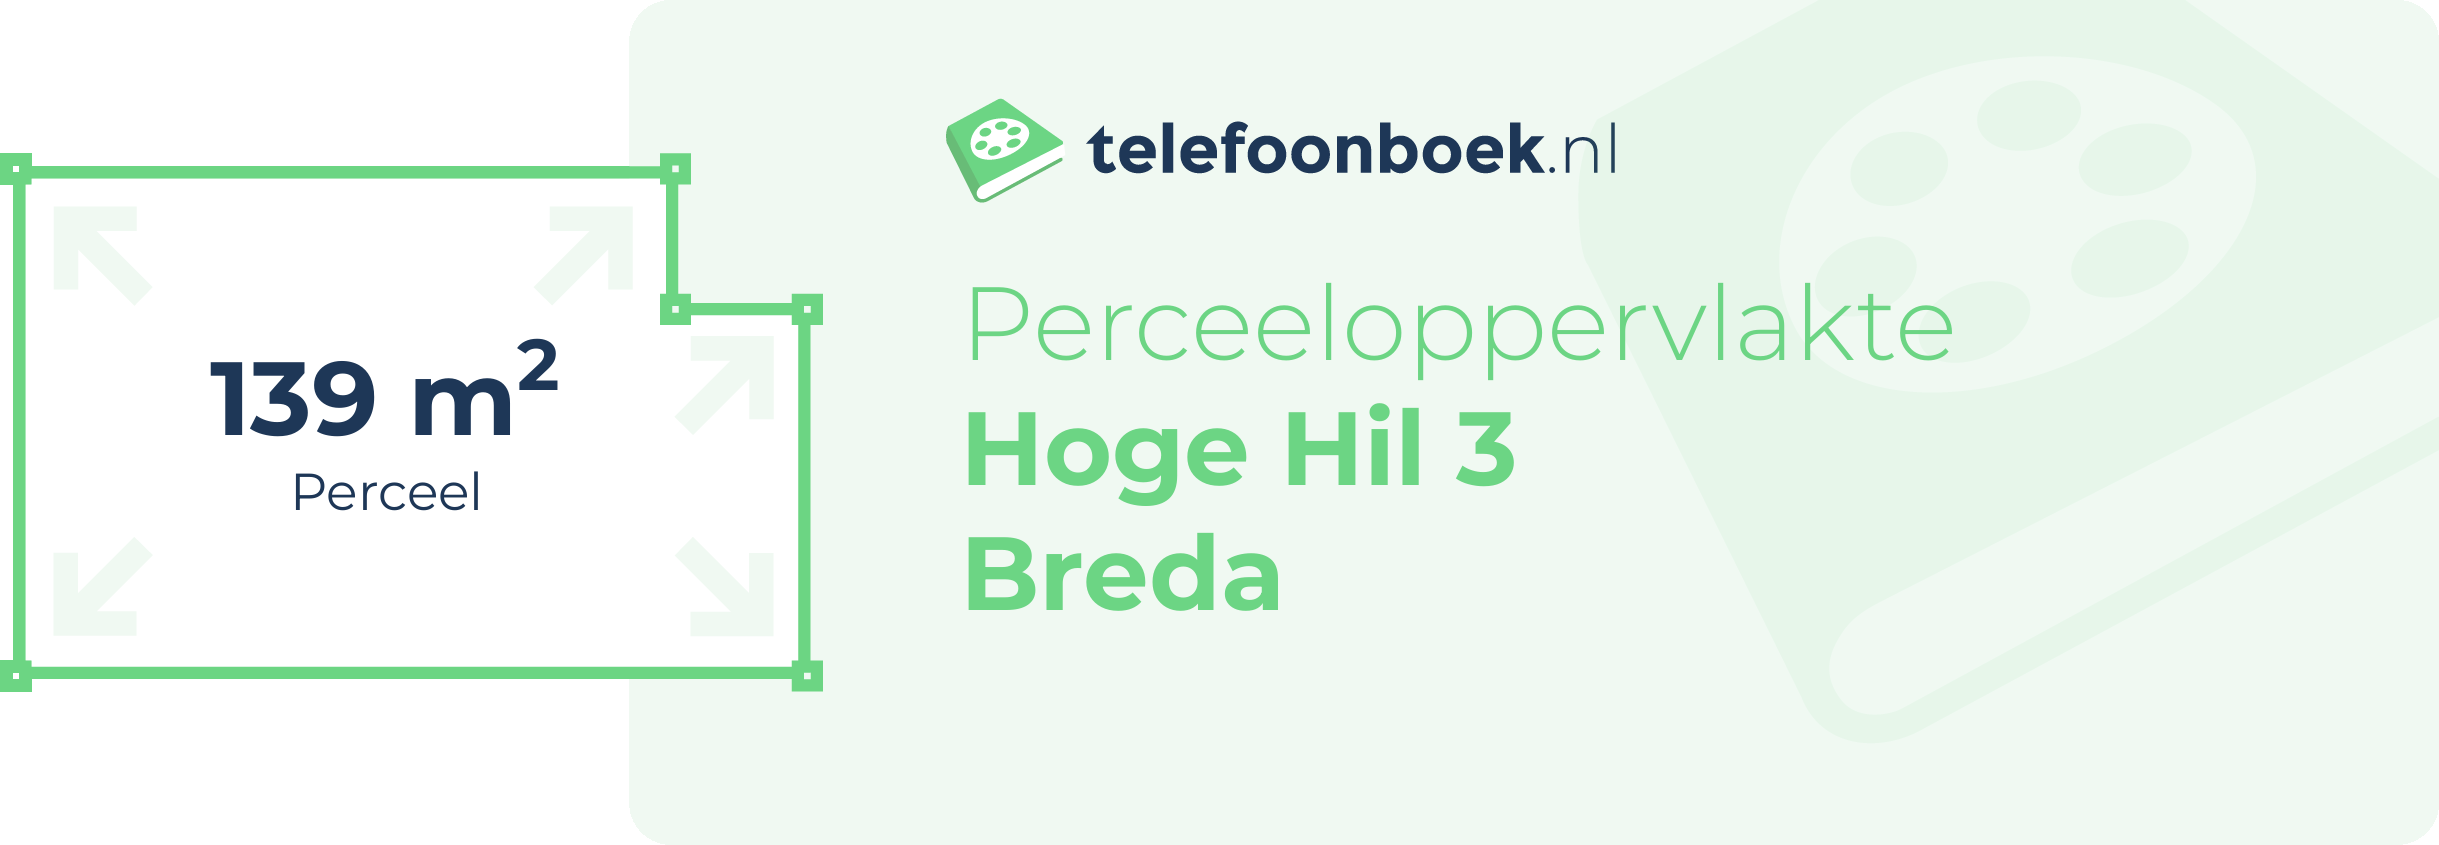 Perceeloppervlakte Hoge Hil 3 Breda